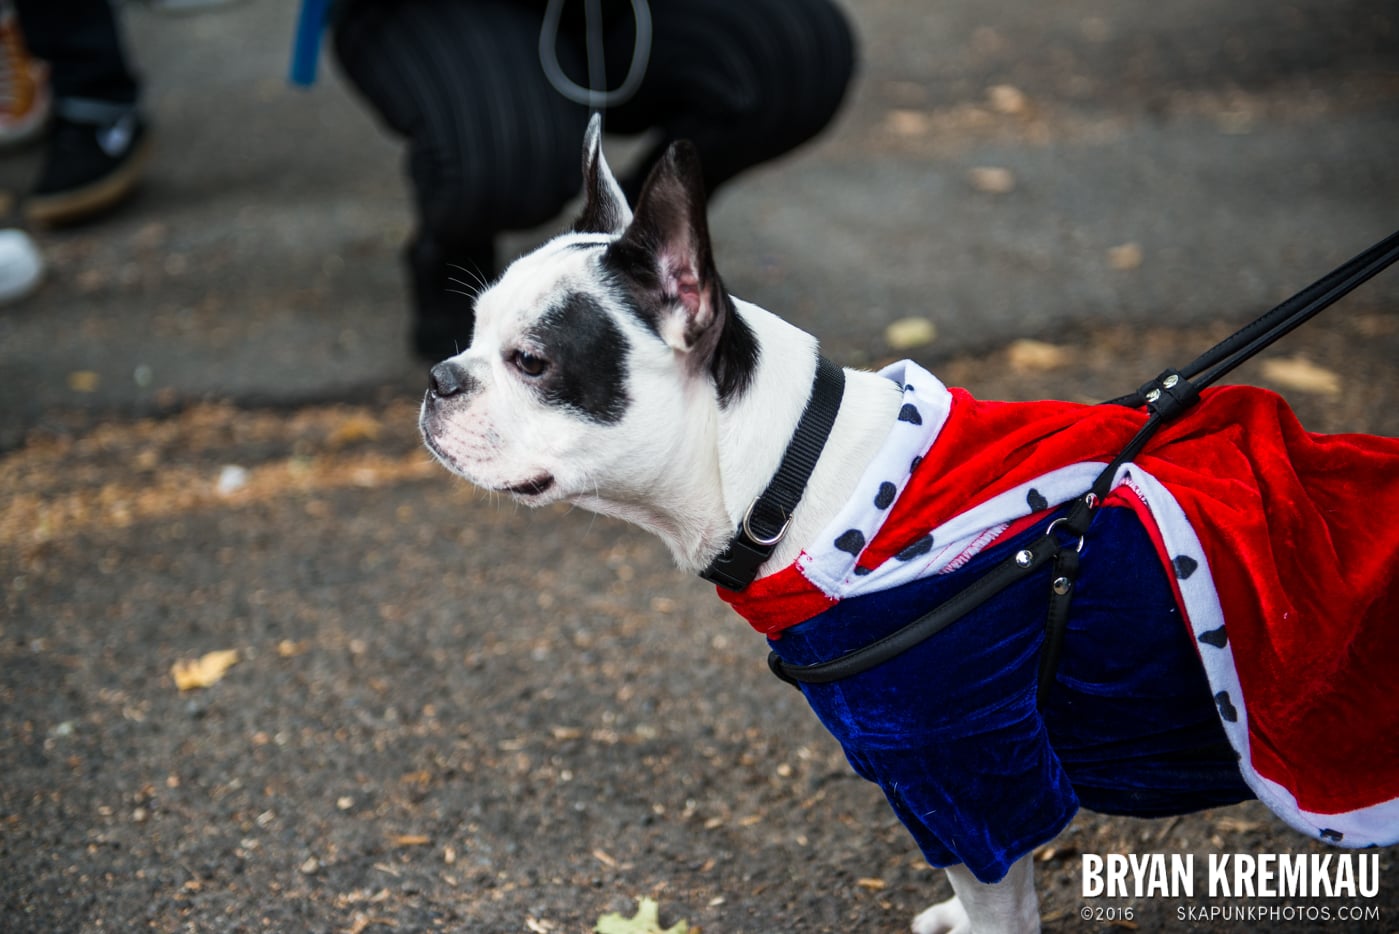 Tompkins Square Halloween Dog Parade 2015 @ Tompkins Square Park, NYC – 10.24.15 (16)